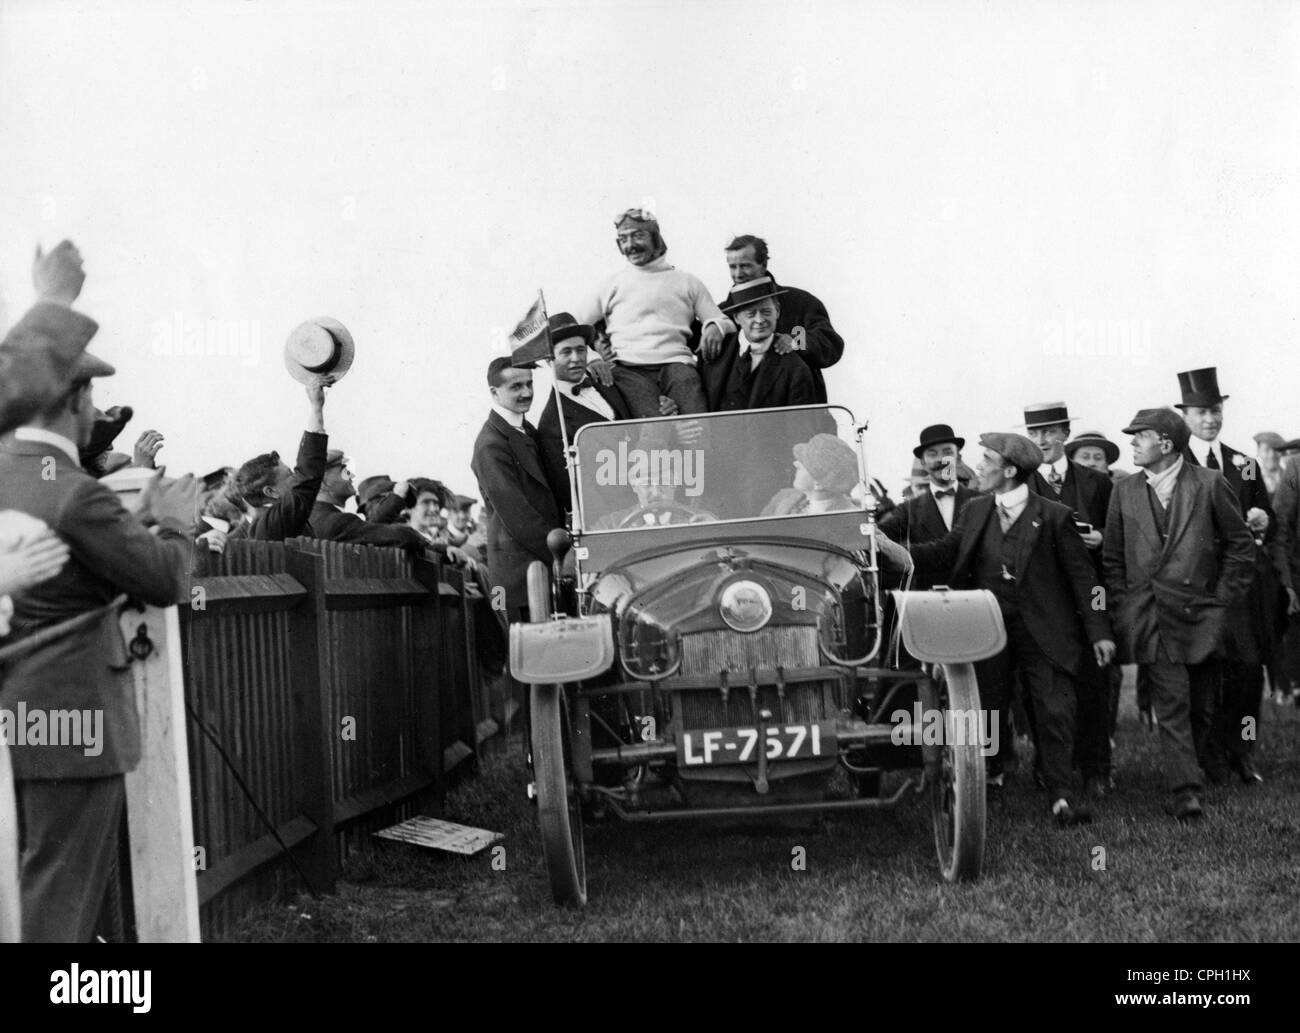 Pegoud, Adolphe, 13.6.1889 - 31.8.1915, aviateur français, est acclamé par fans, Brooklands, Surrey, Angleterre, 1913, Banque D'Images